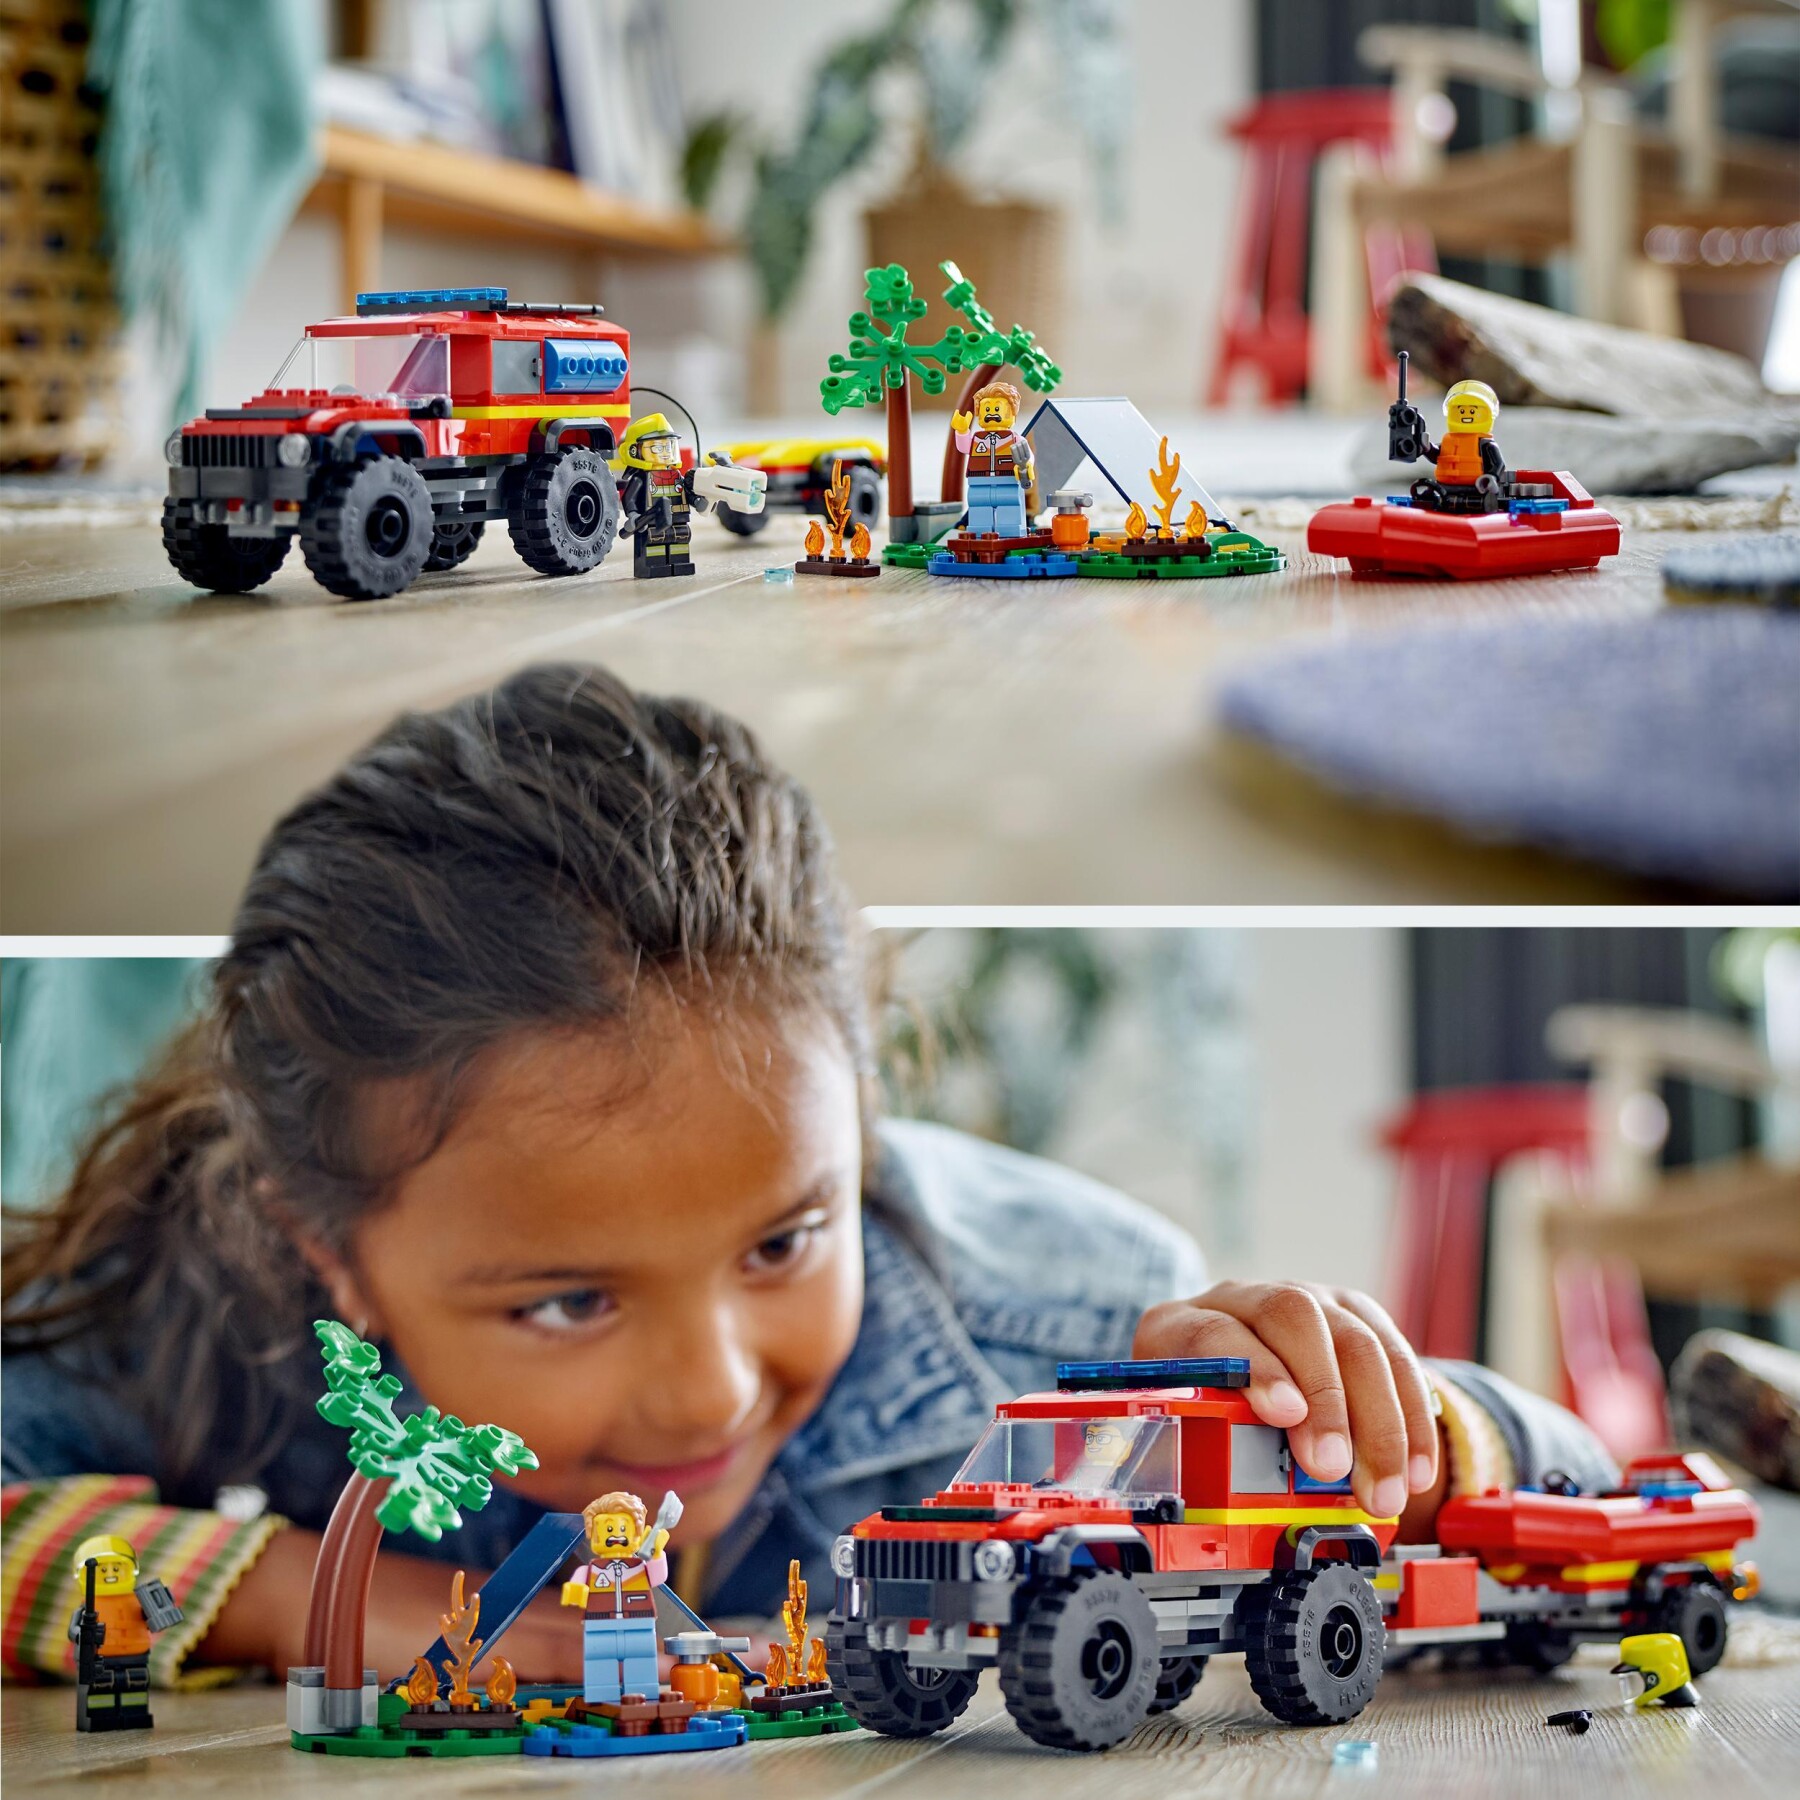 Lego city 60412 fuoristrada antincendio e gommone di salvataggio, camion dei pompieri giocattolo, giochi per bambini 5+ anni - LEGO CITY